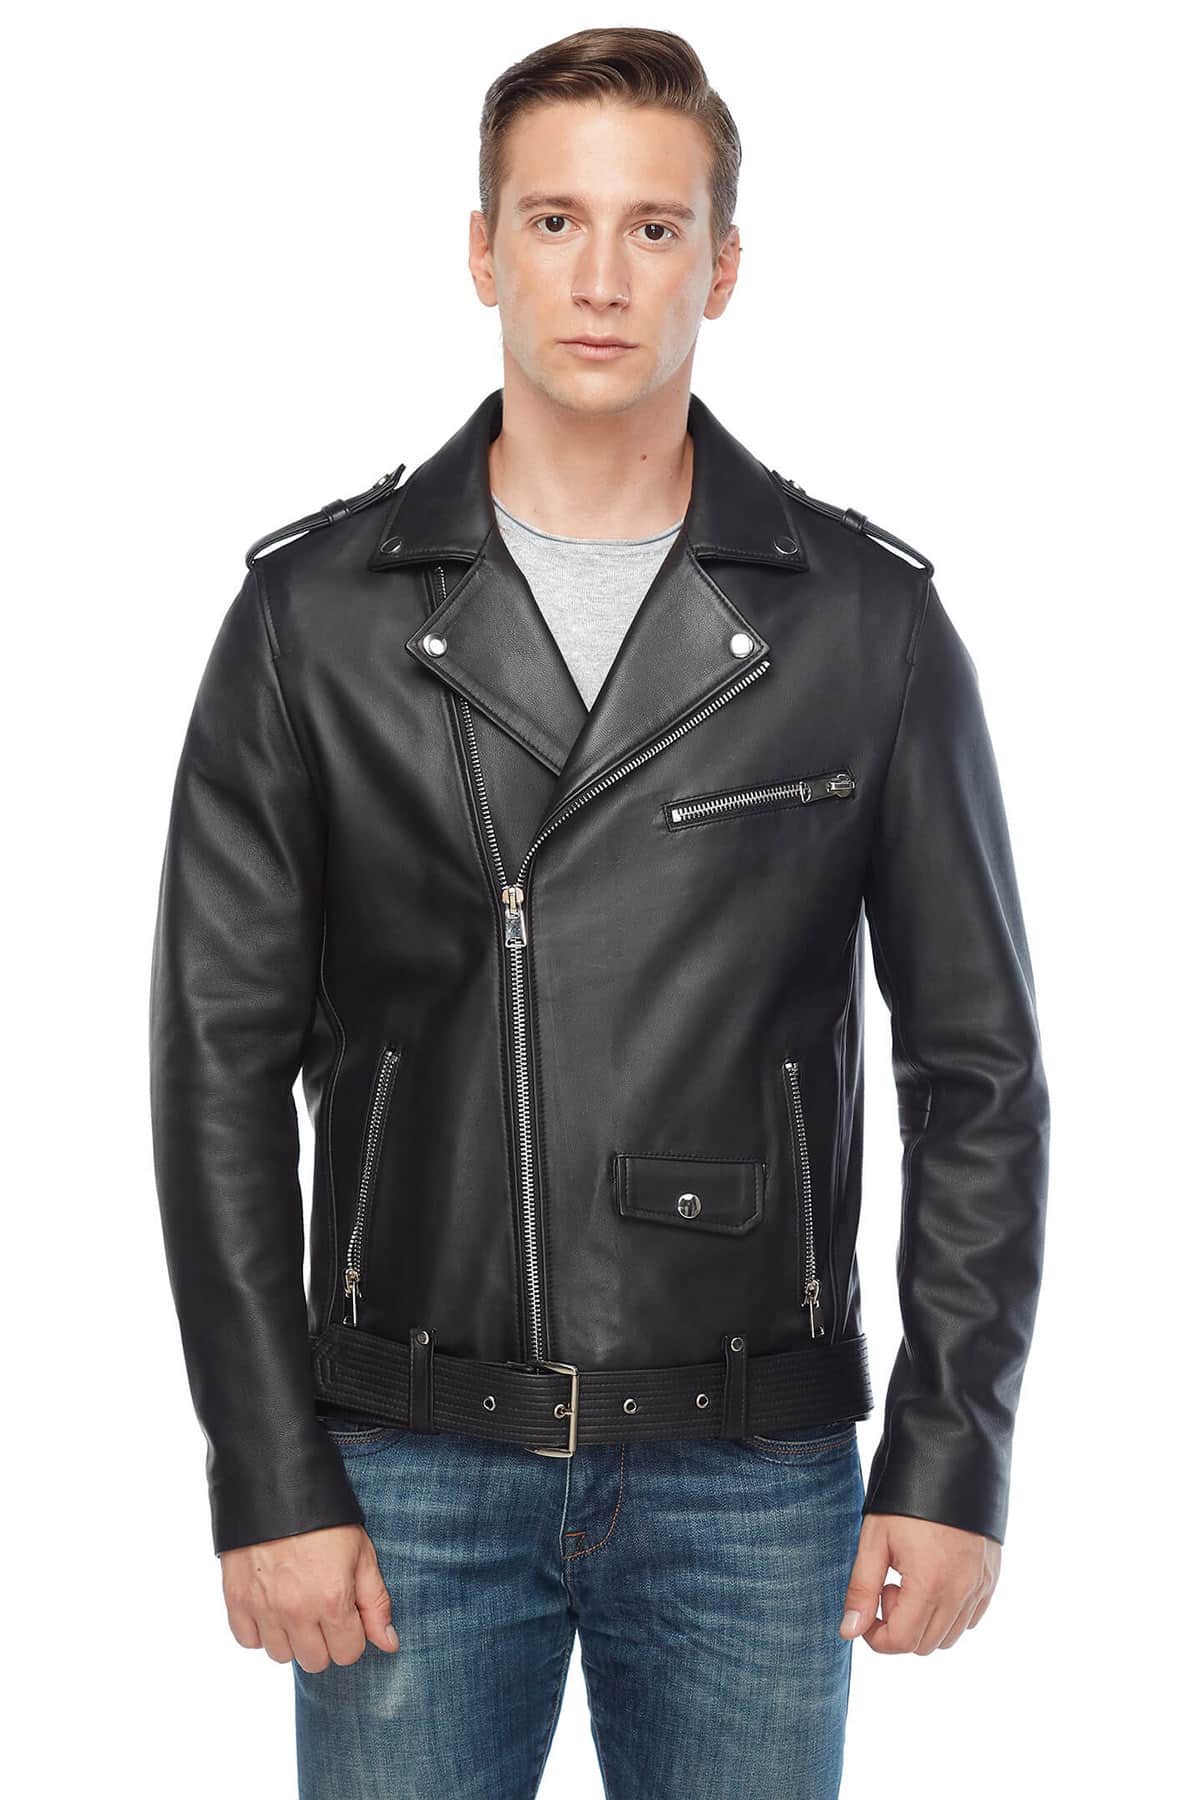 Lewis Tan Genuine Leather Biker Jacket Black3